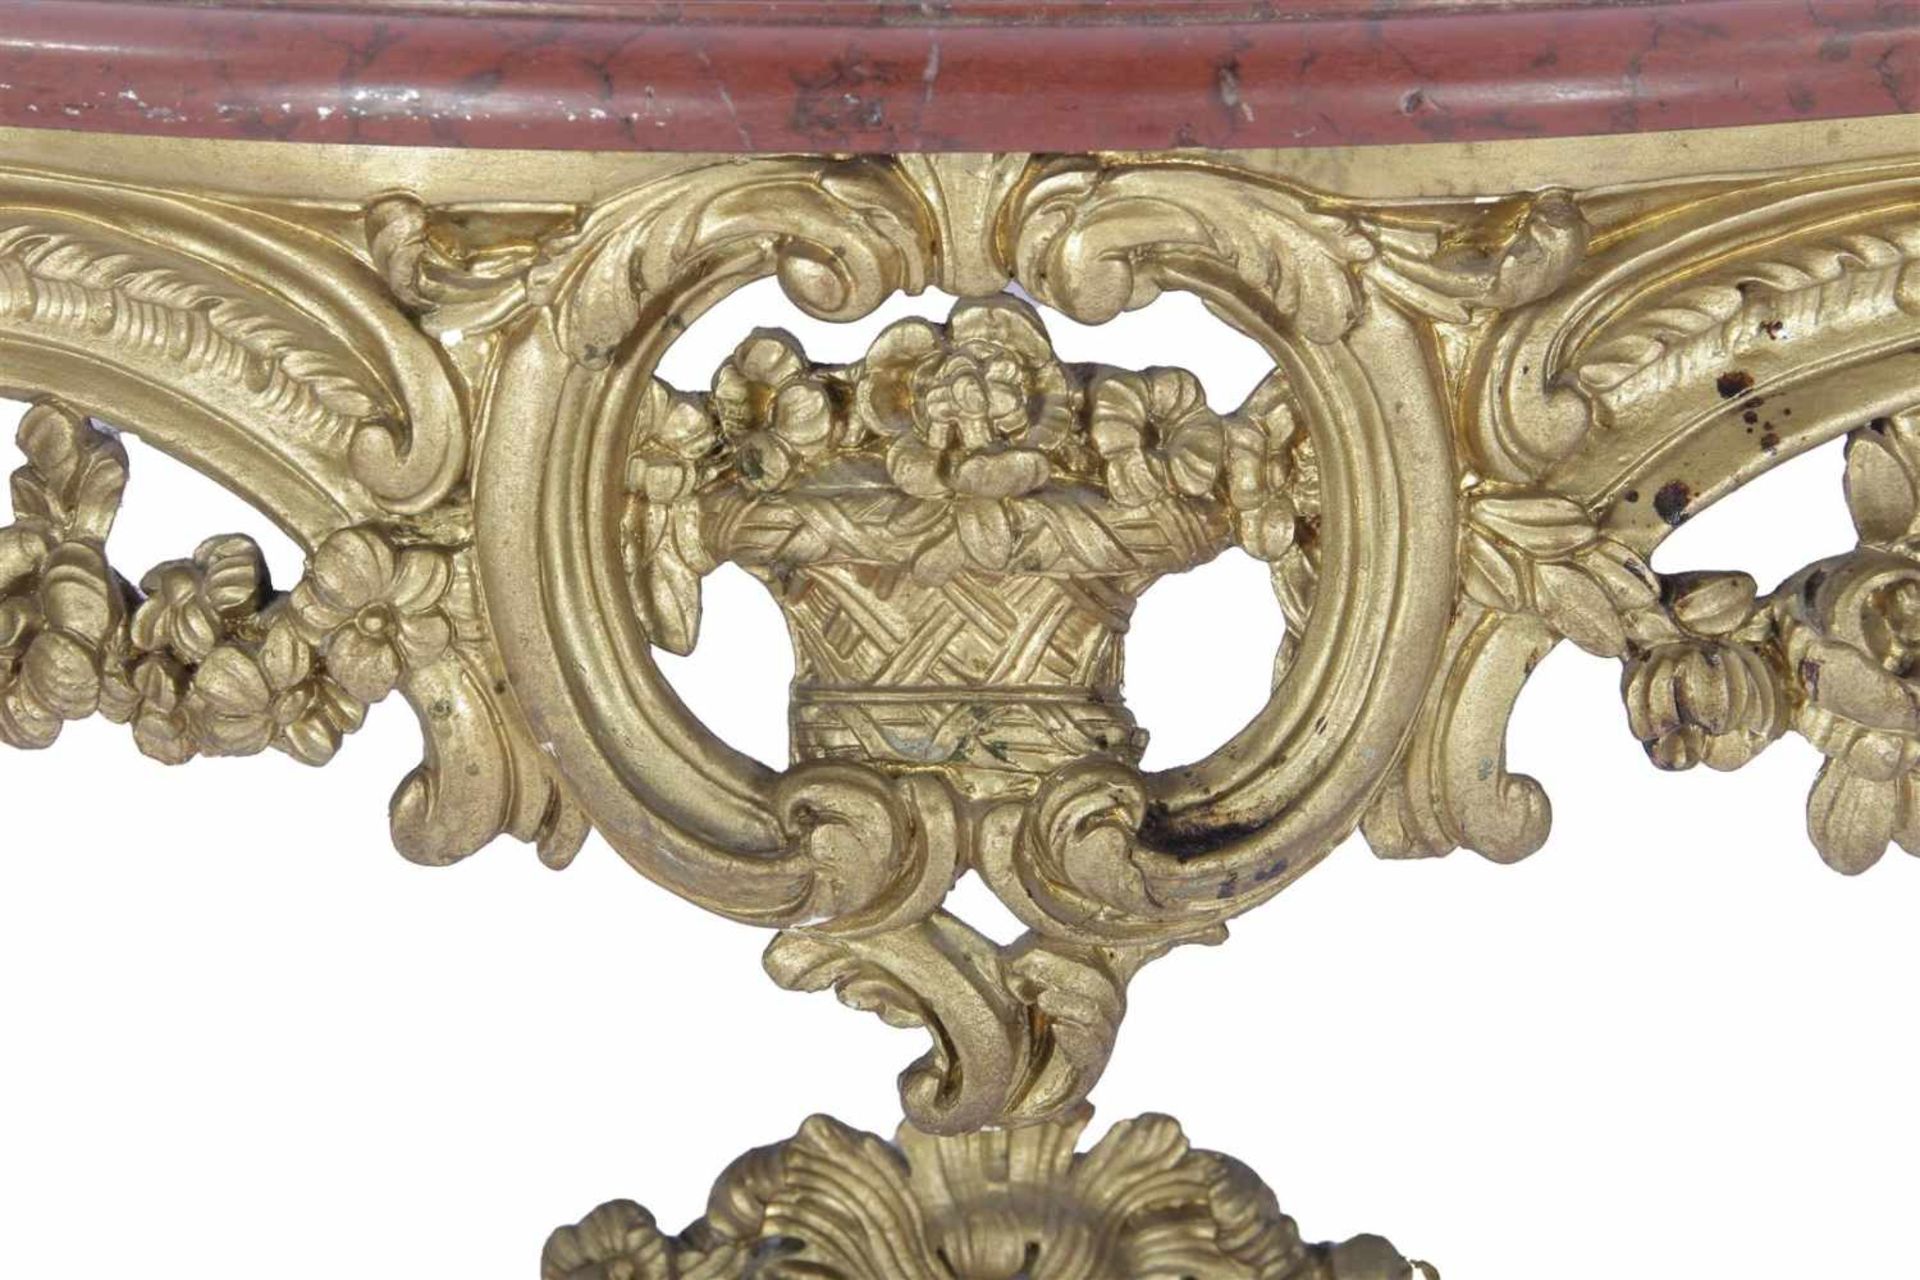 Barok houten vergulde consoletafel met rood marmeren blad 69 cm hoog, 107,5 cm breed, 45 cm diep - Image 2 of 2